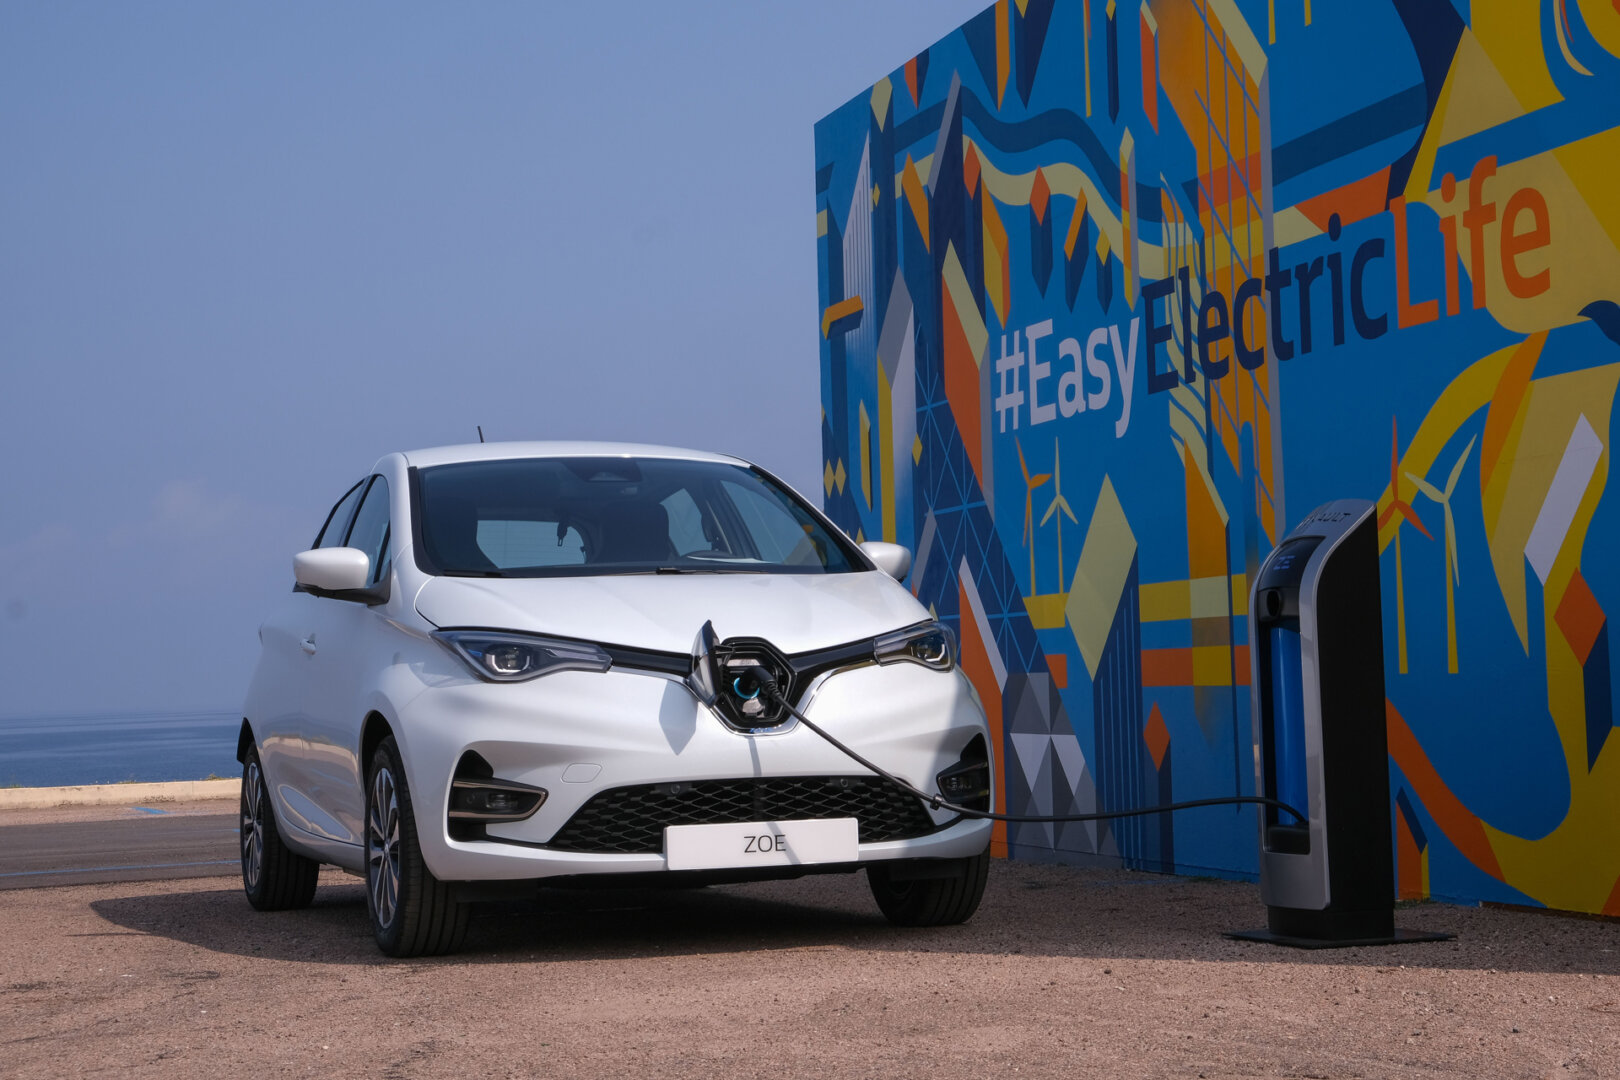 Weißer Renault Zoe wird an Ladestation geladen